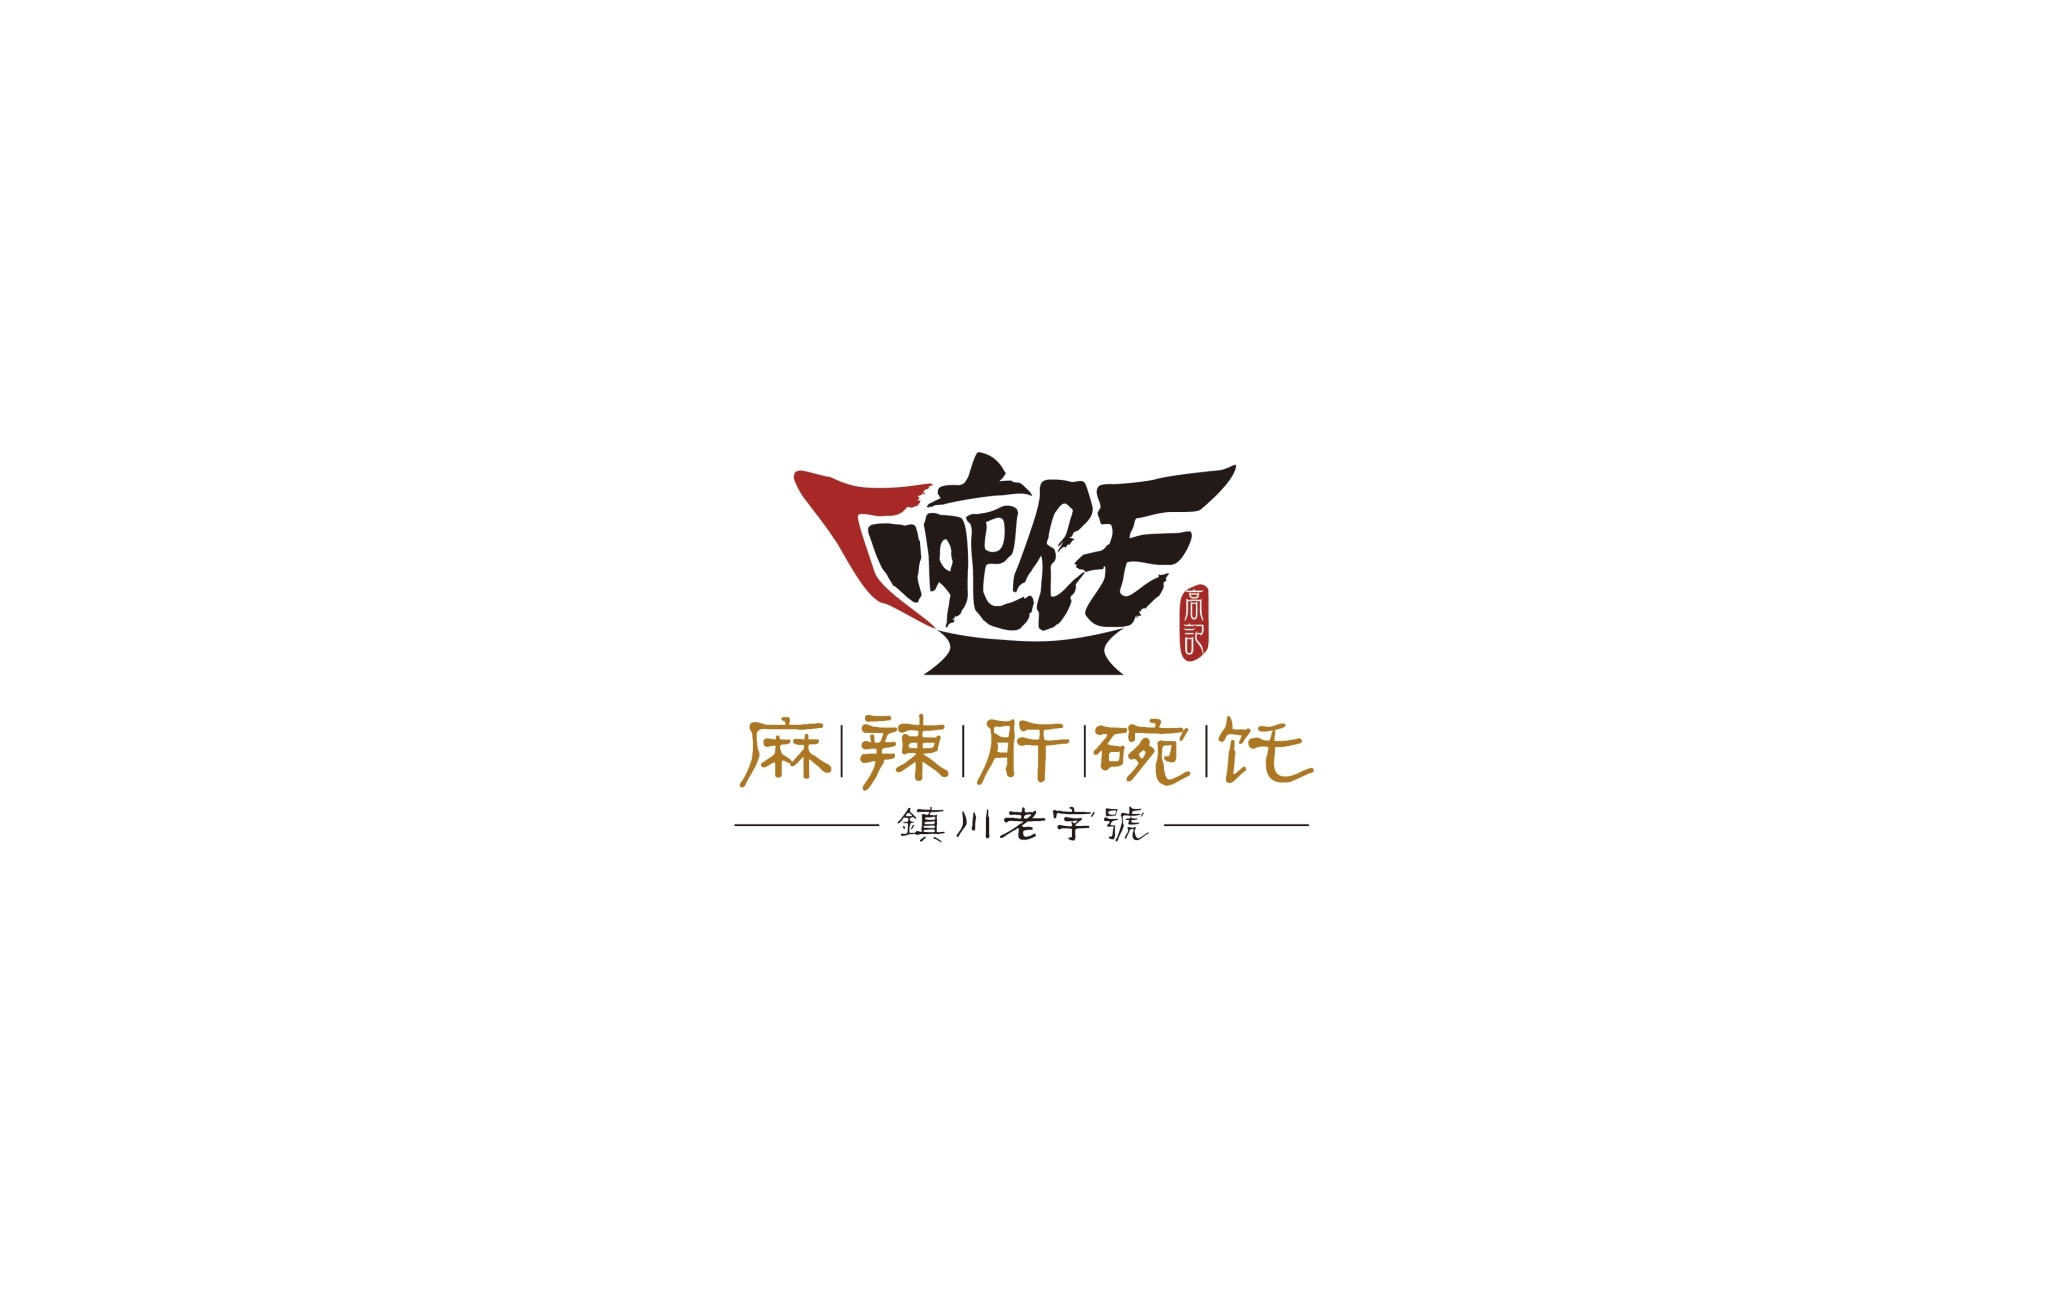 陕西麻辣肝碗饦logo